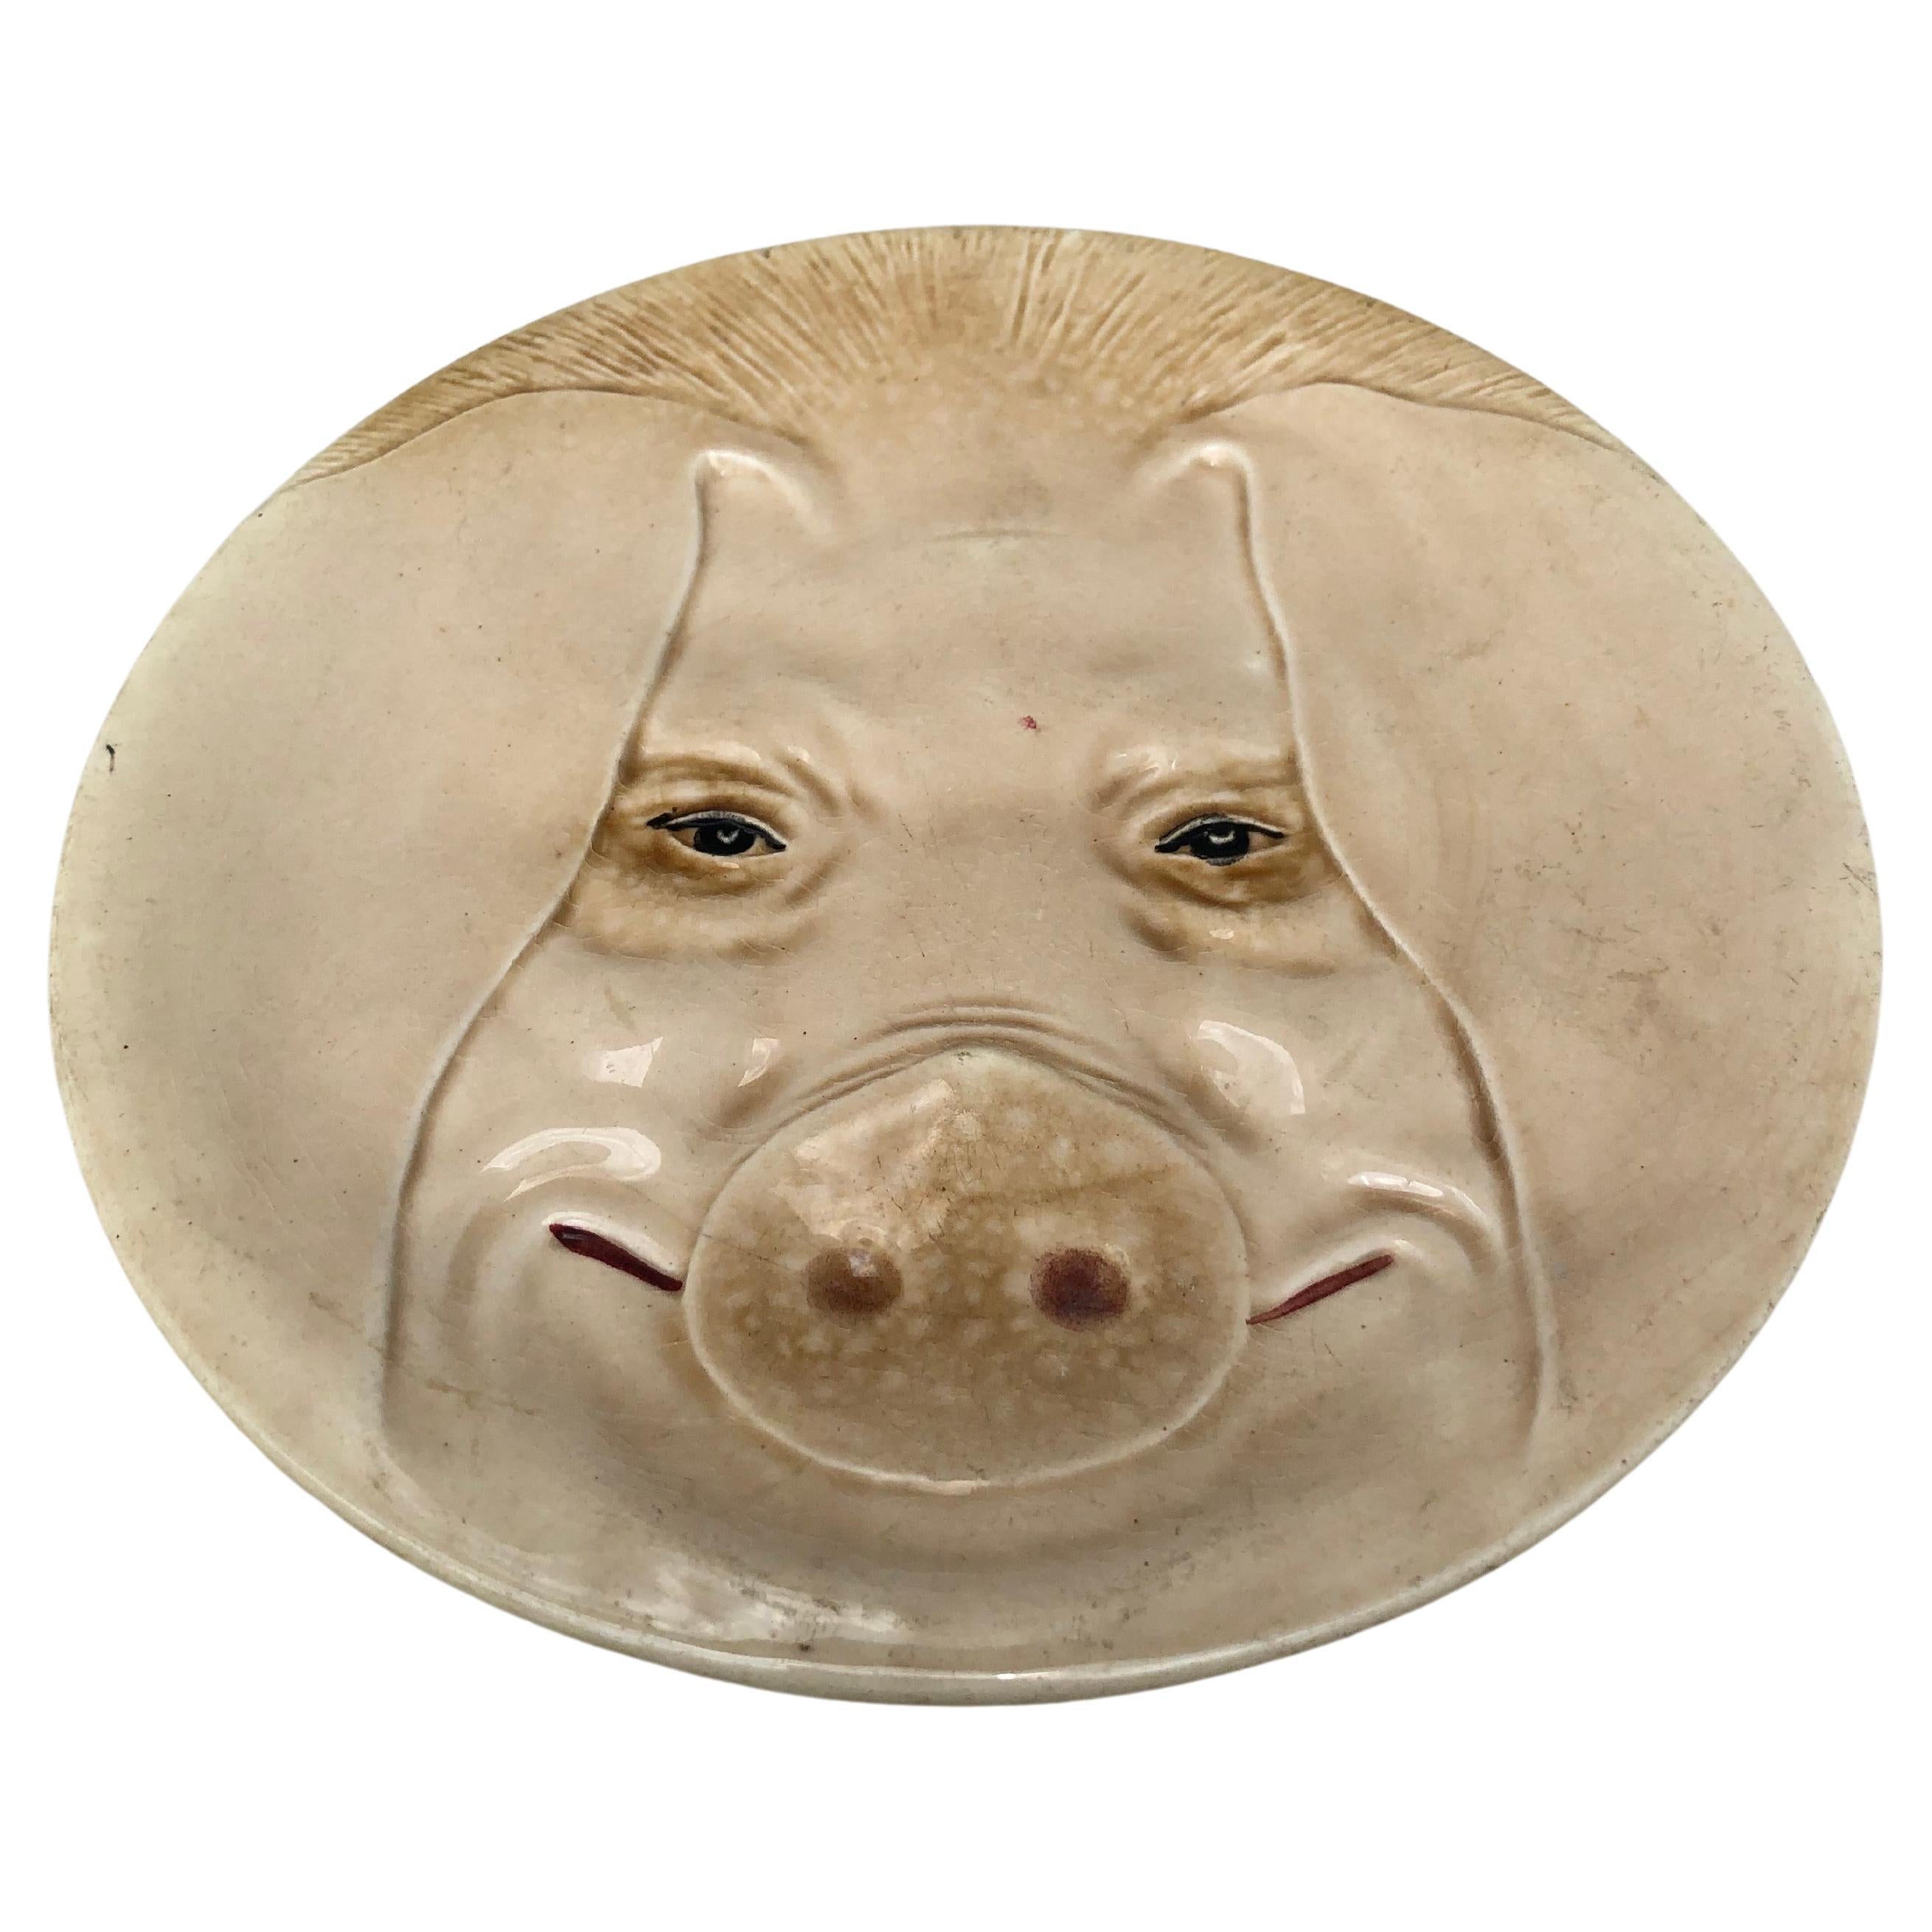 Insolite assiette en majolique française avec une tête de cochon fabriquée par Orchies (Nord de la France), vers 1900.